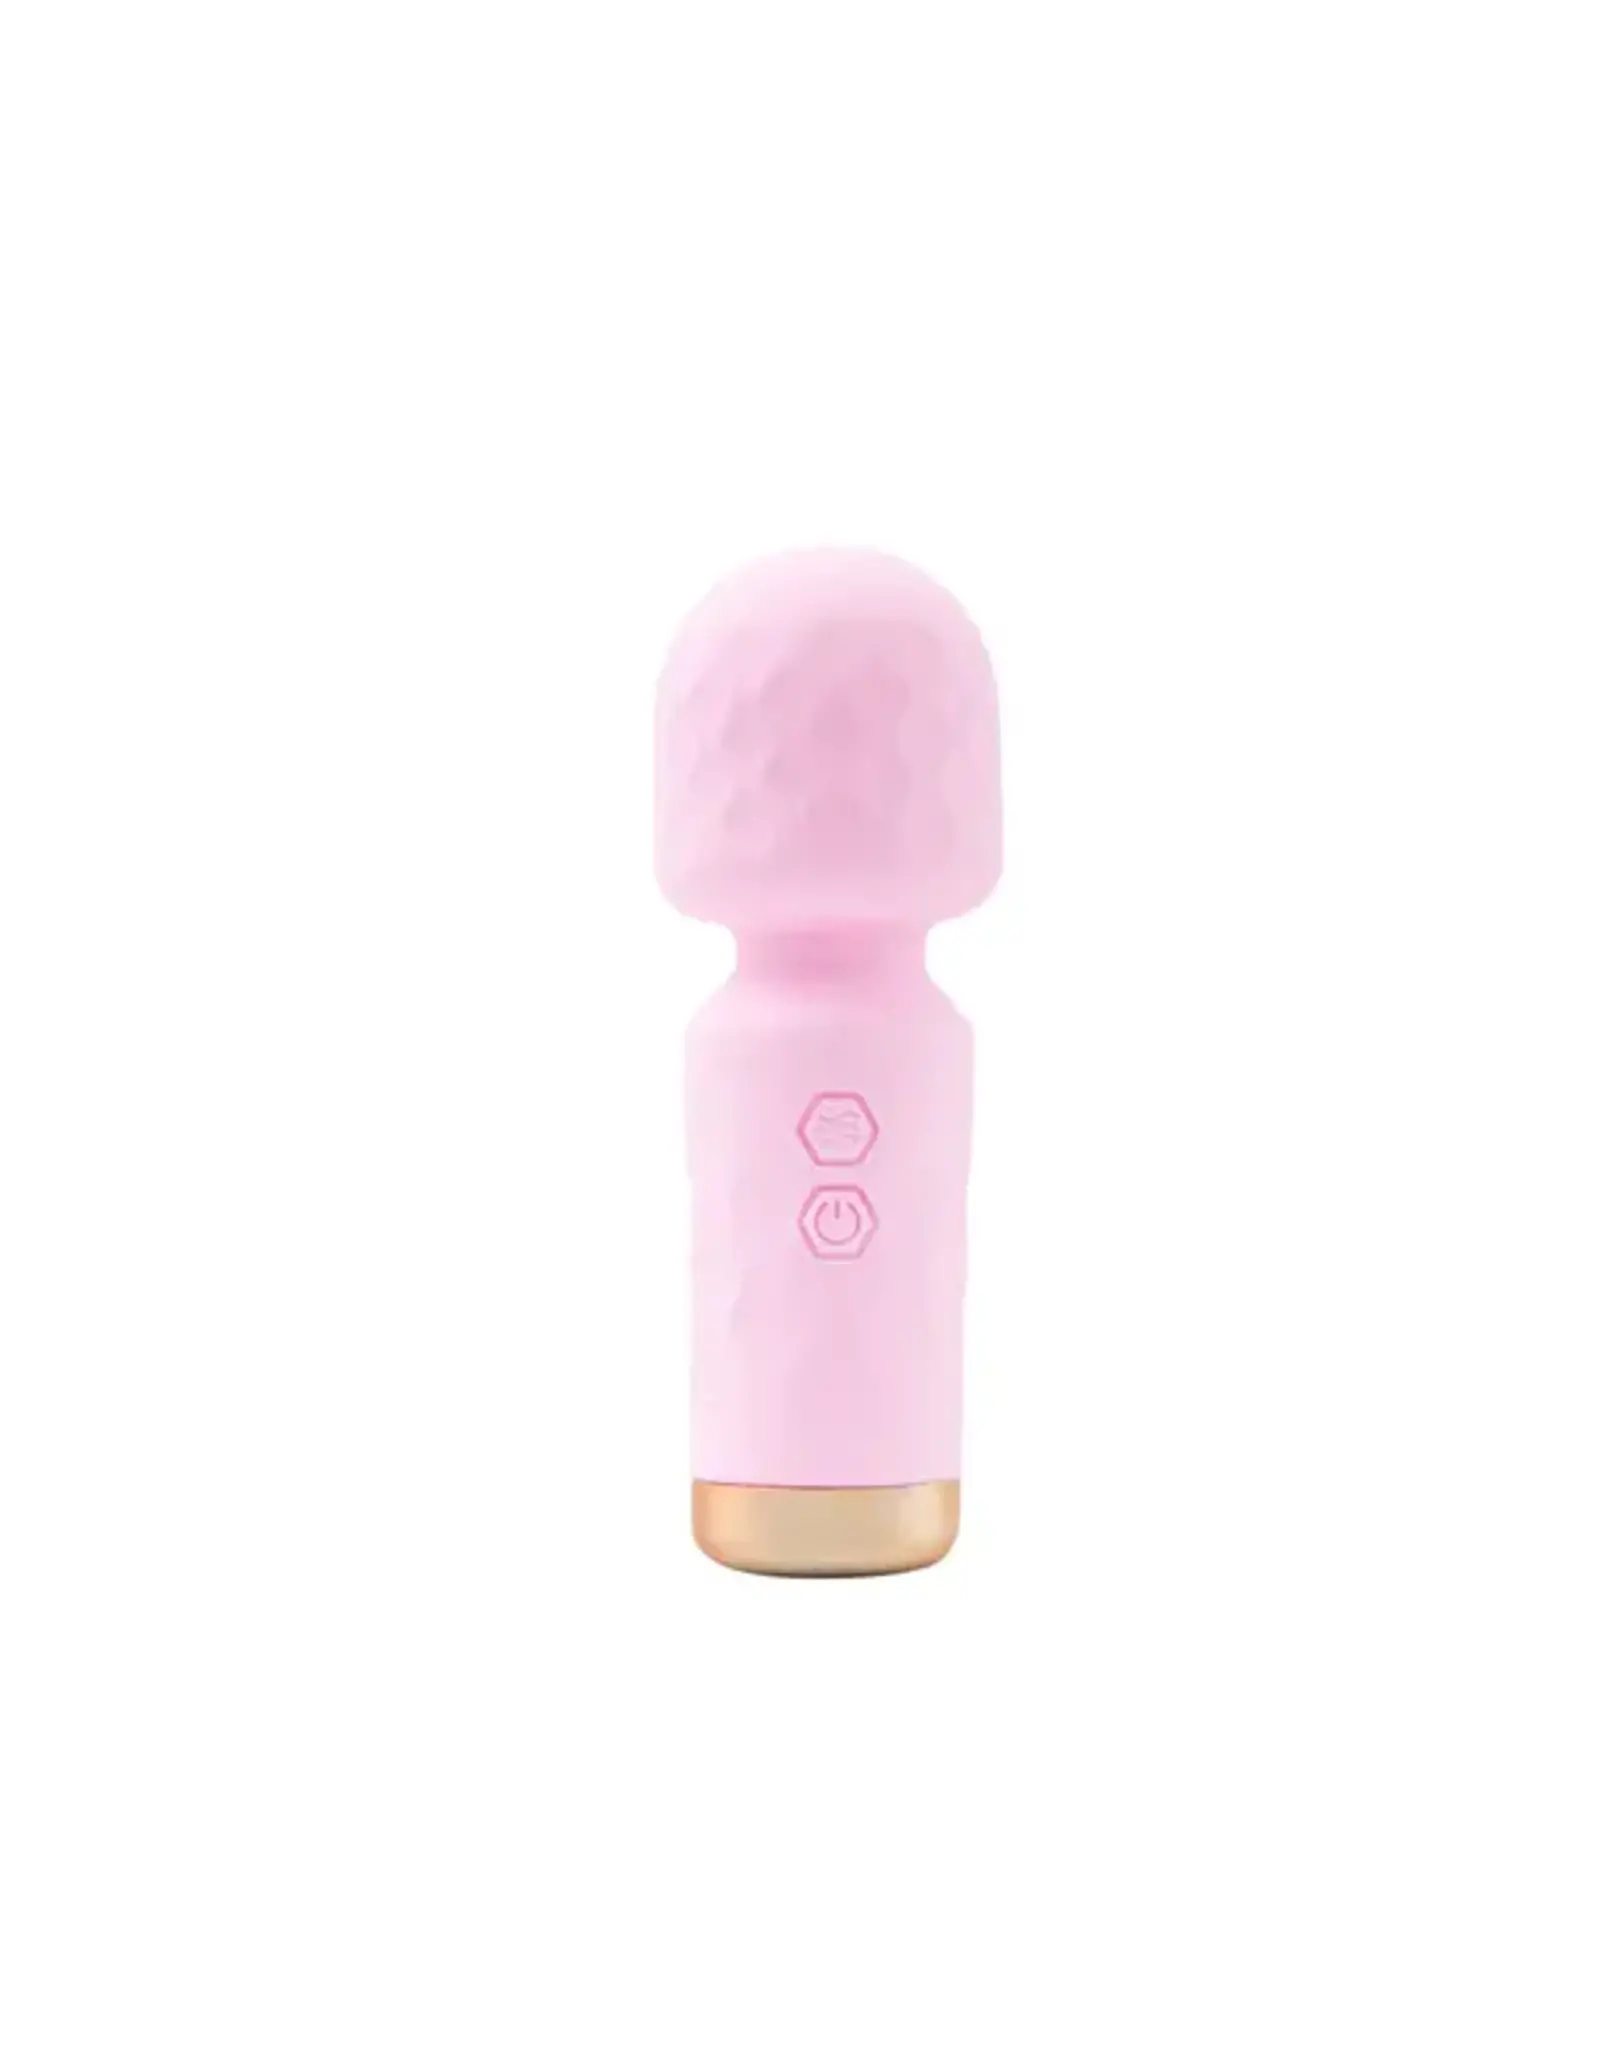 M'Lady Mini Vibrator Wand - Pink